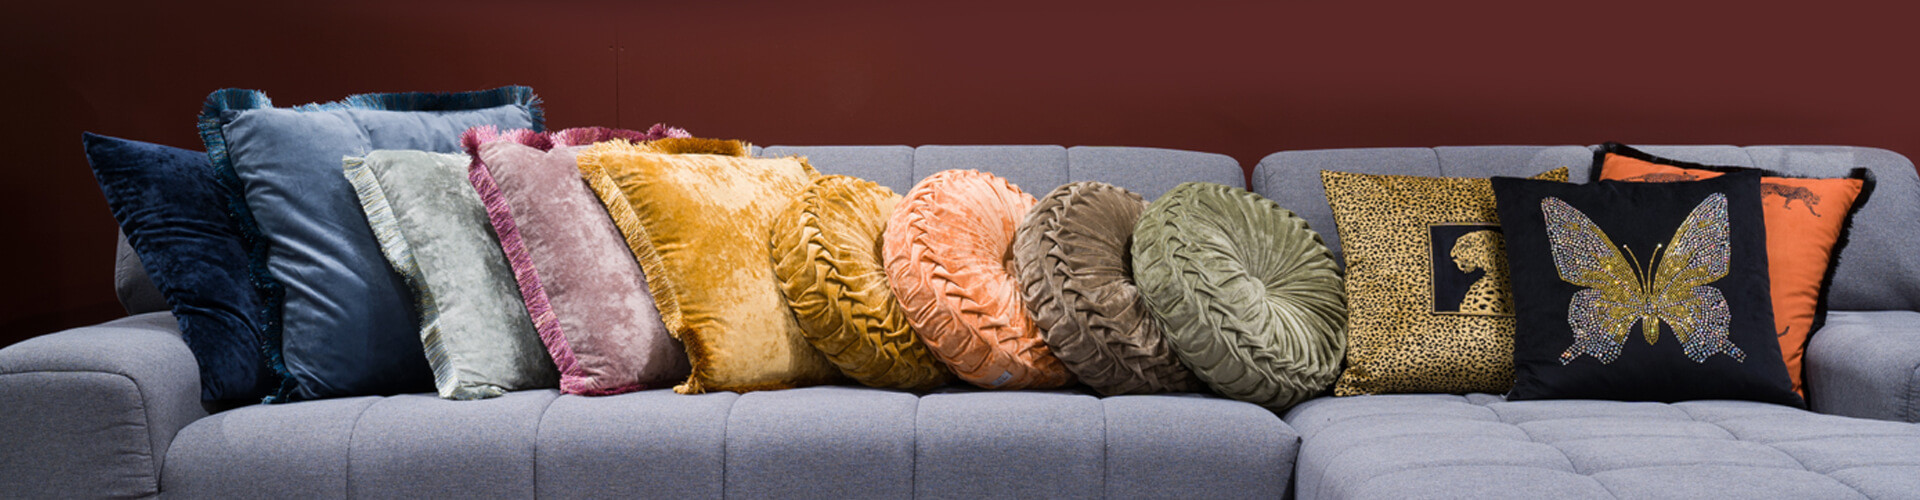 Decorative pillows - ALANDEKO.com